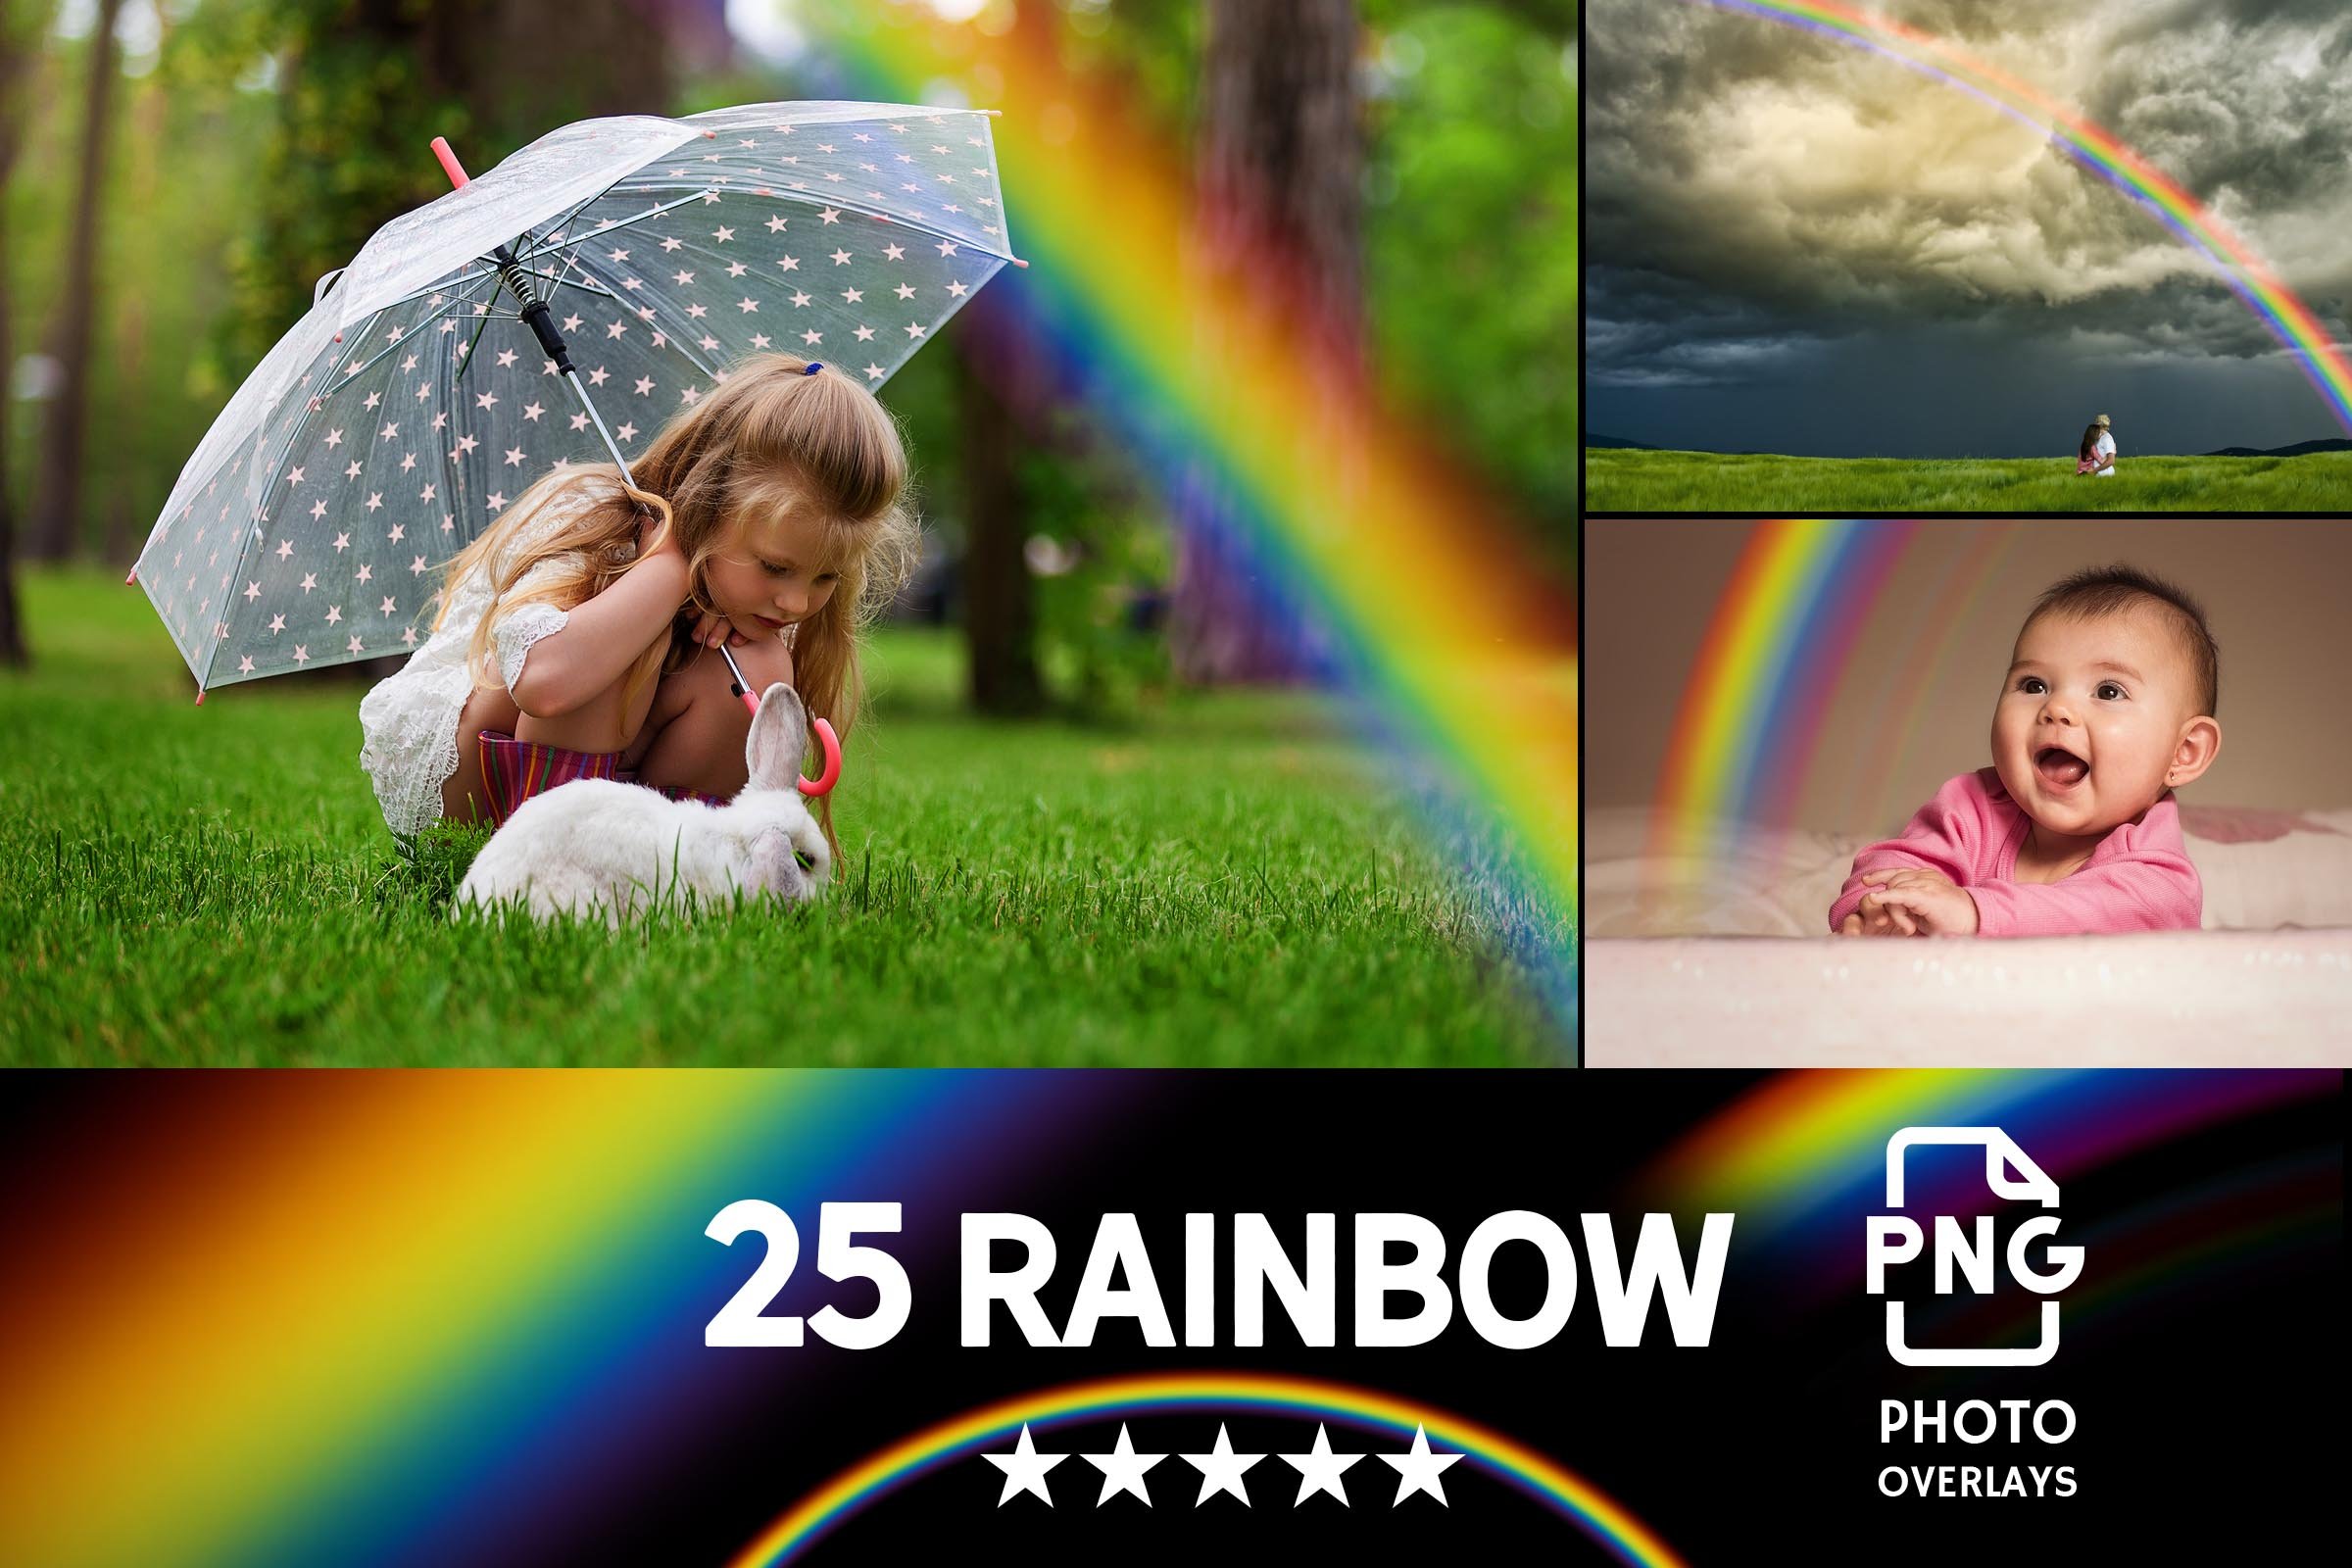 004. 25 rainbow photo overlays 2 800